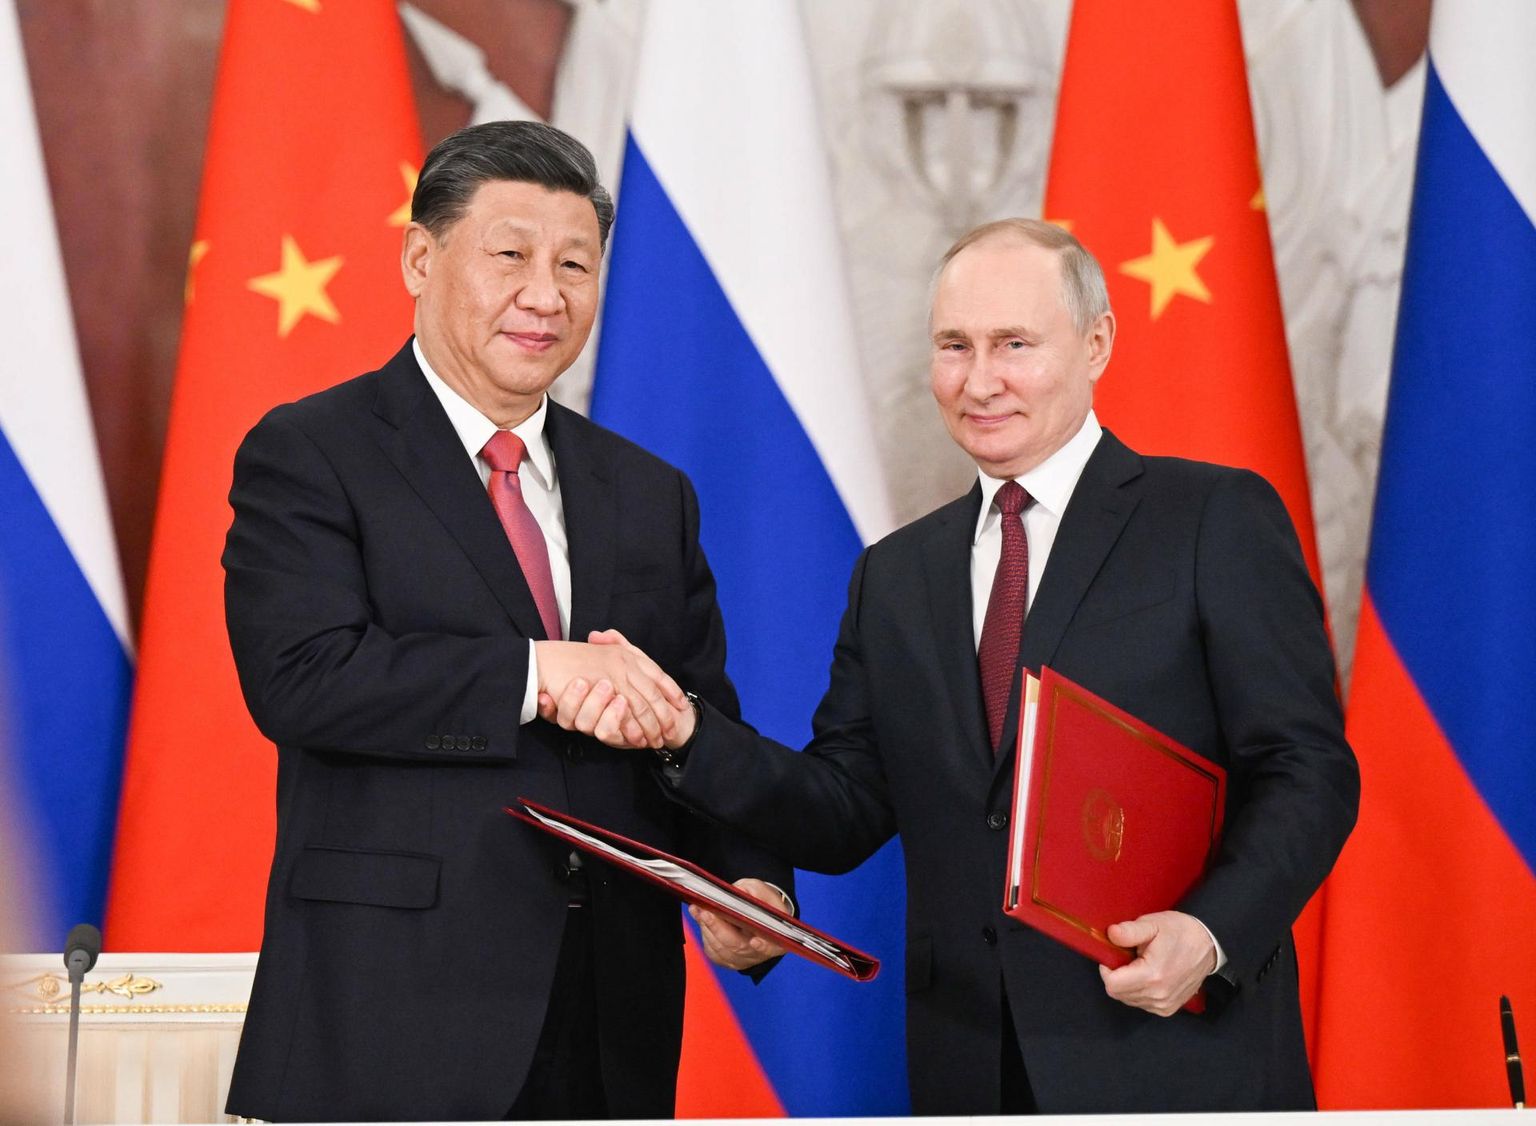 Hiina RV president Xi Jinping ja tema Vene ametivend Vladimir Putin Kremlis. Suuri muutusi tippkohtumine kaasa ei toonud – Xi ei lubanud Putinile sõjalist abi agressiooniks Ukrainas.

 